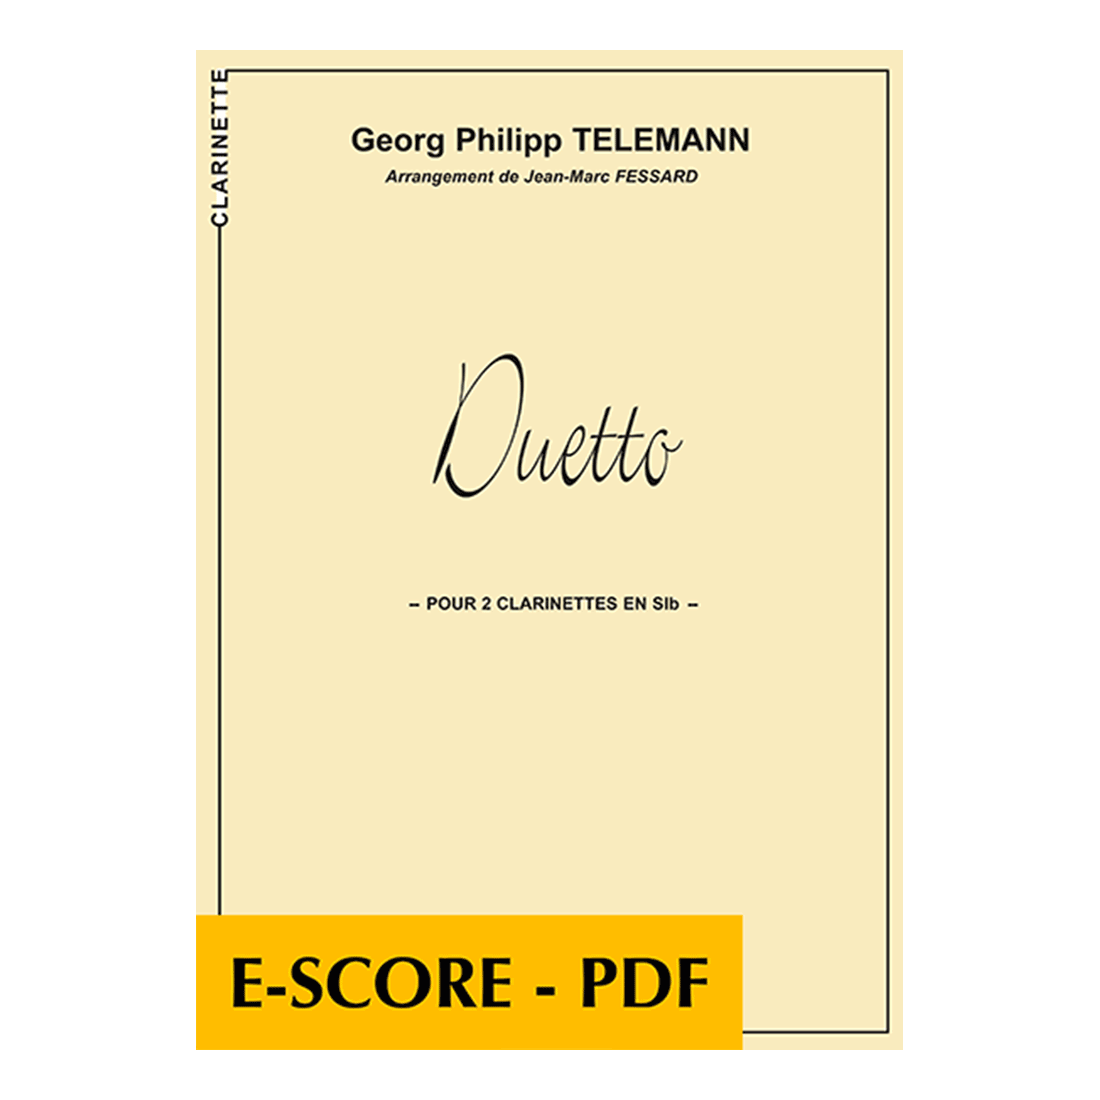 Duetto for 2 clarinets - E-score PDF